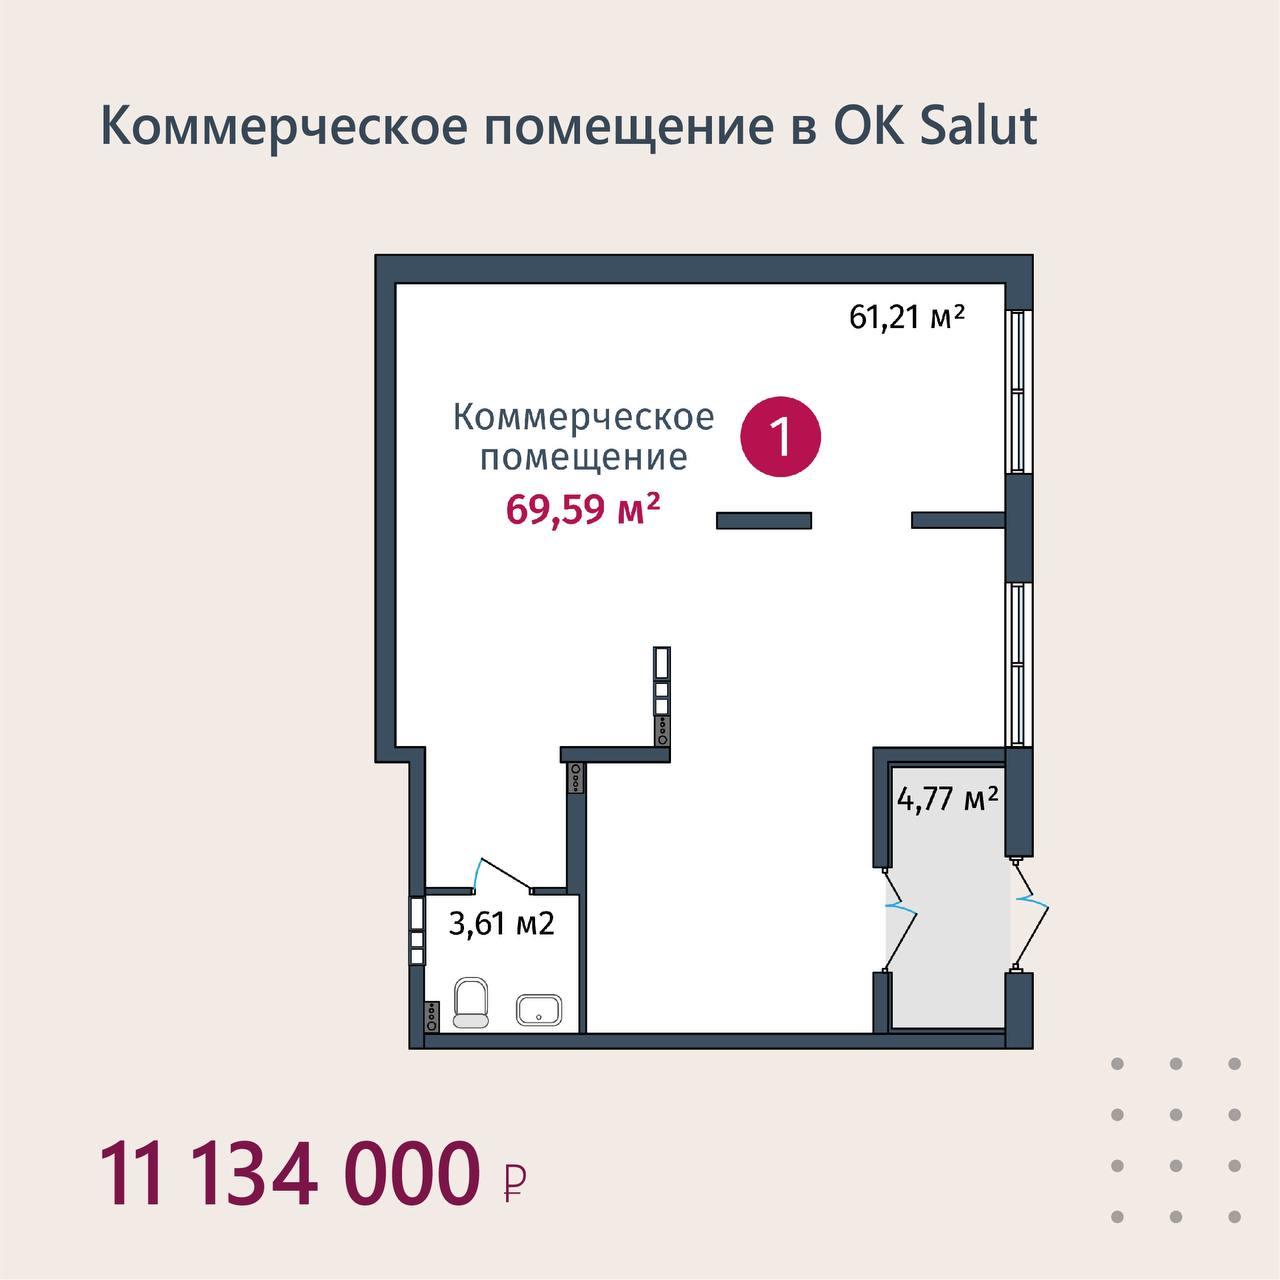 Коммерческое помещение в OK Salut в доме ГП-3, 69,59  м²